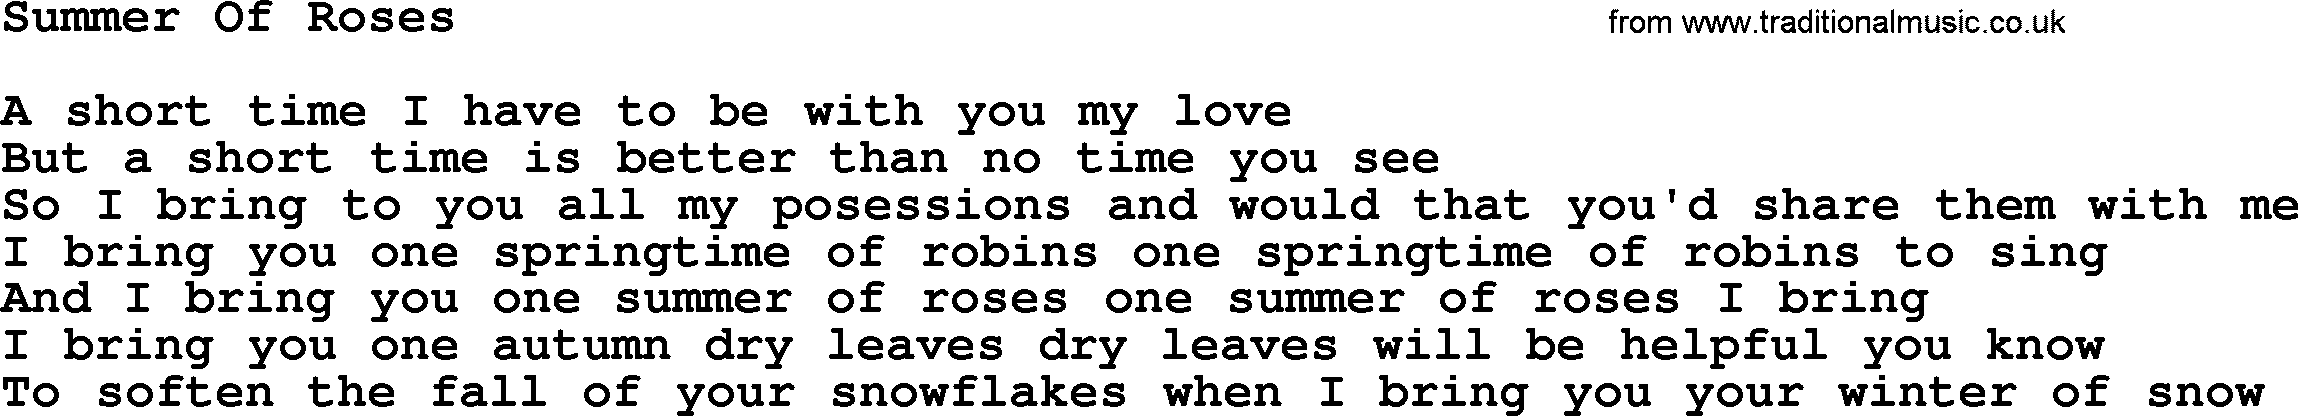 Willie Nelson song: Summer Of Roses lyrics